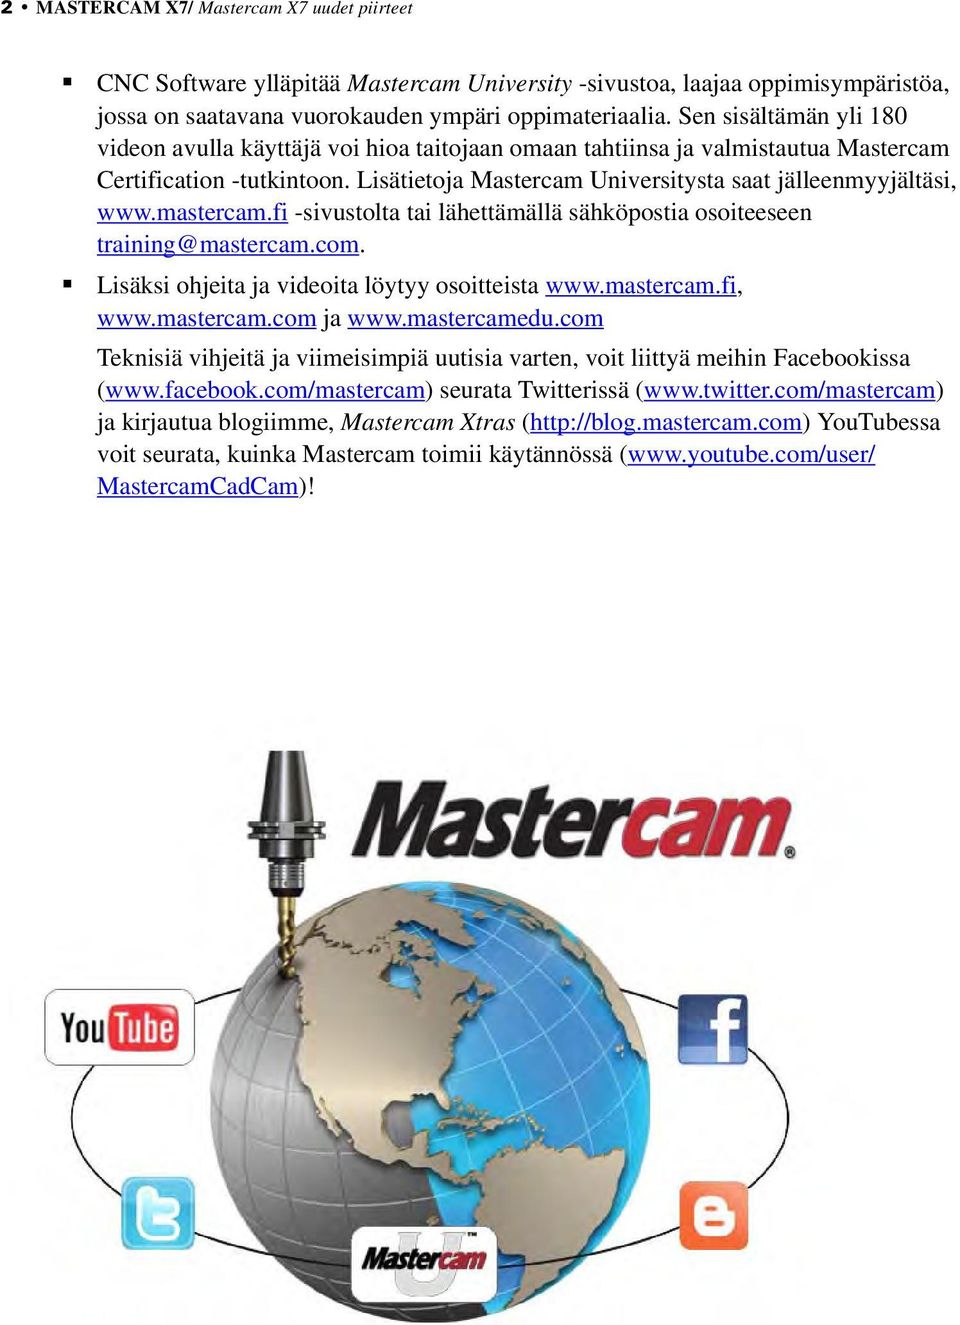 mastercam.fi -sivustolta tai lähettämällä sähköpostia osoiteeseen training@mastercam.com. Lisäksi ohjeita ja videoita löytyy osoitteista www.mastercam.fi, www.mastercam.com ja www.mastercamedu.